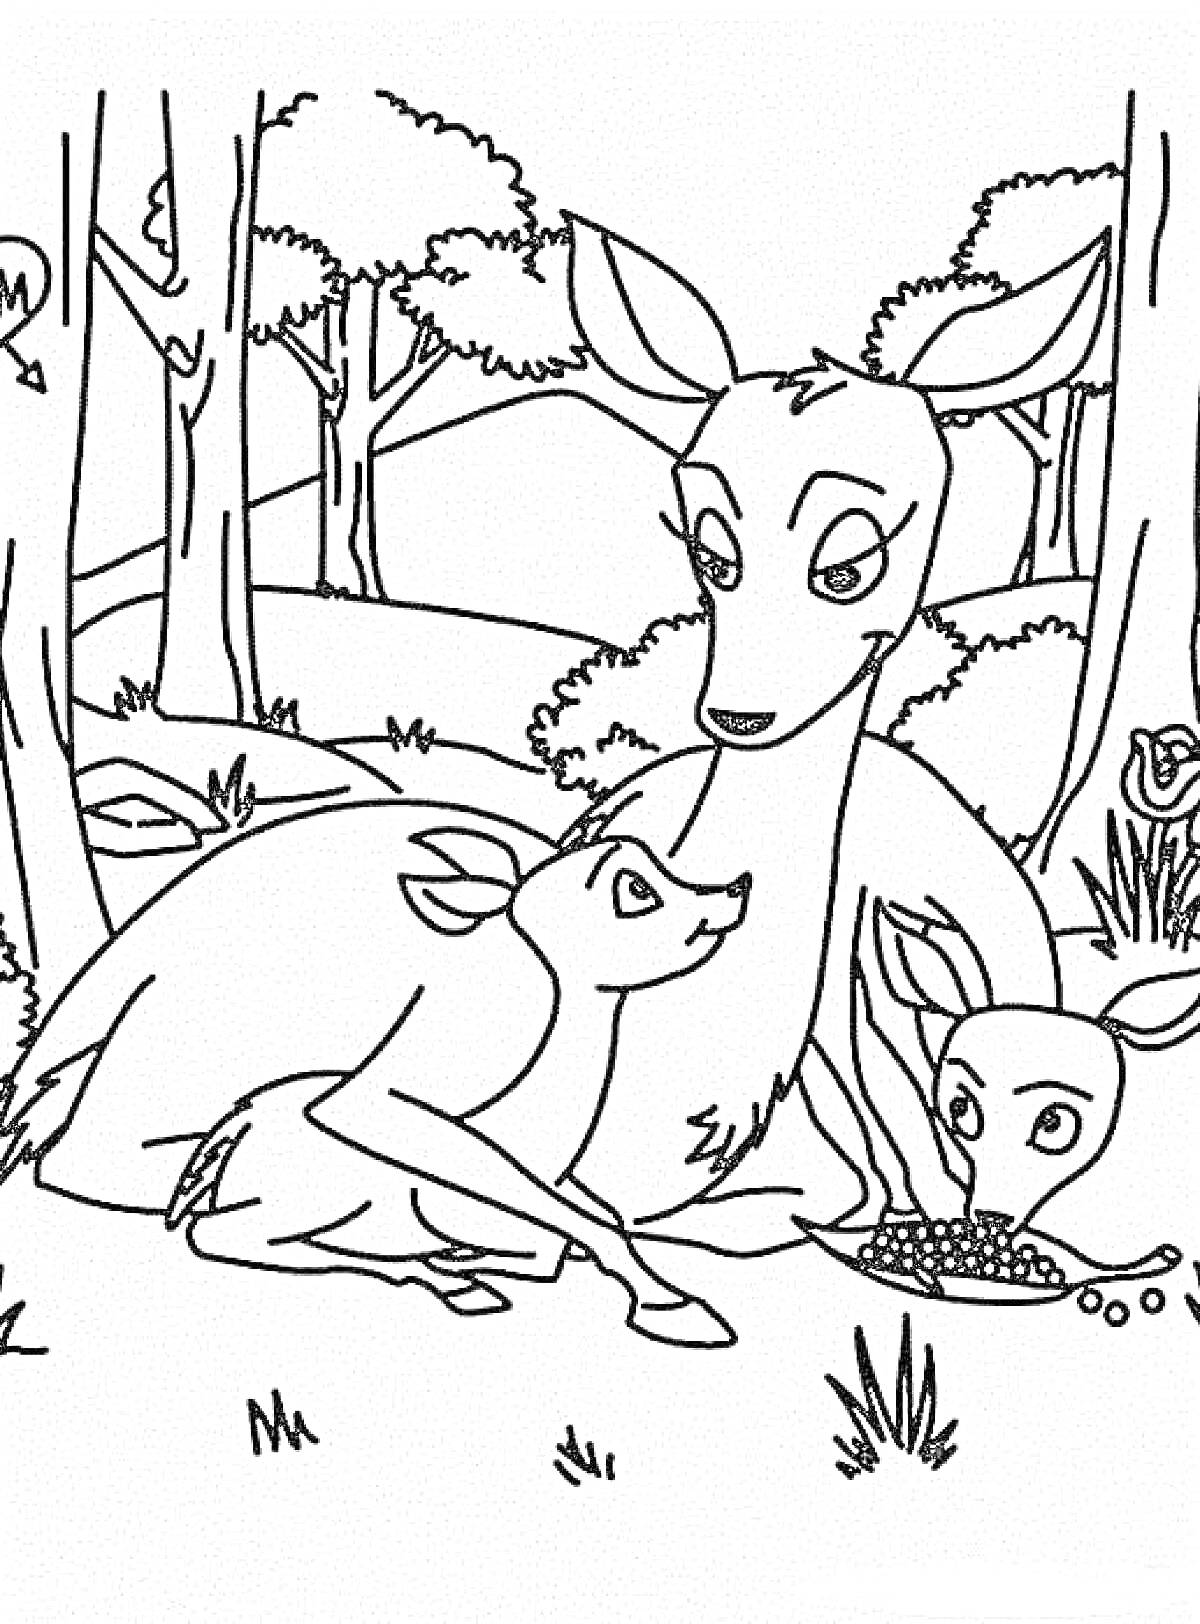 Олениха с двумя оленятами в лесу